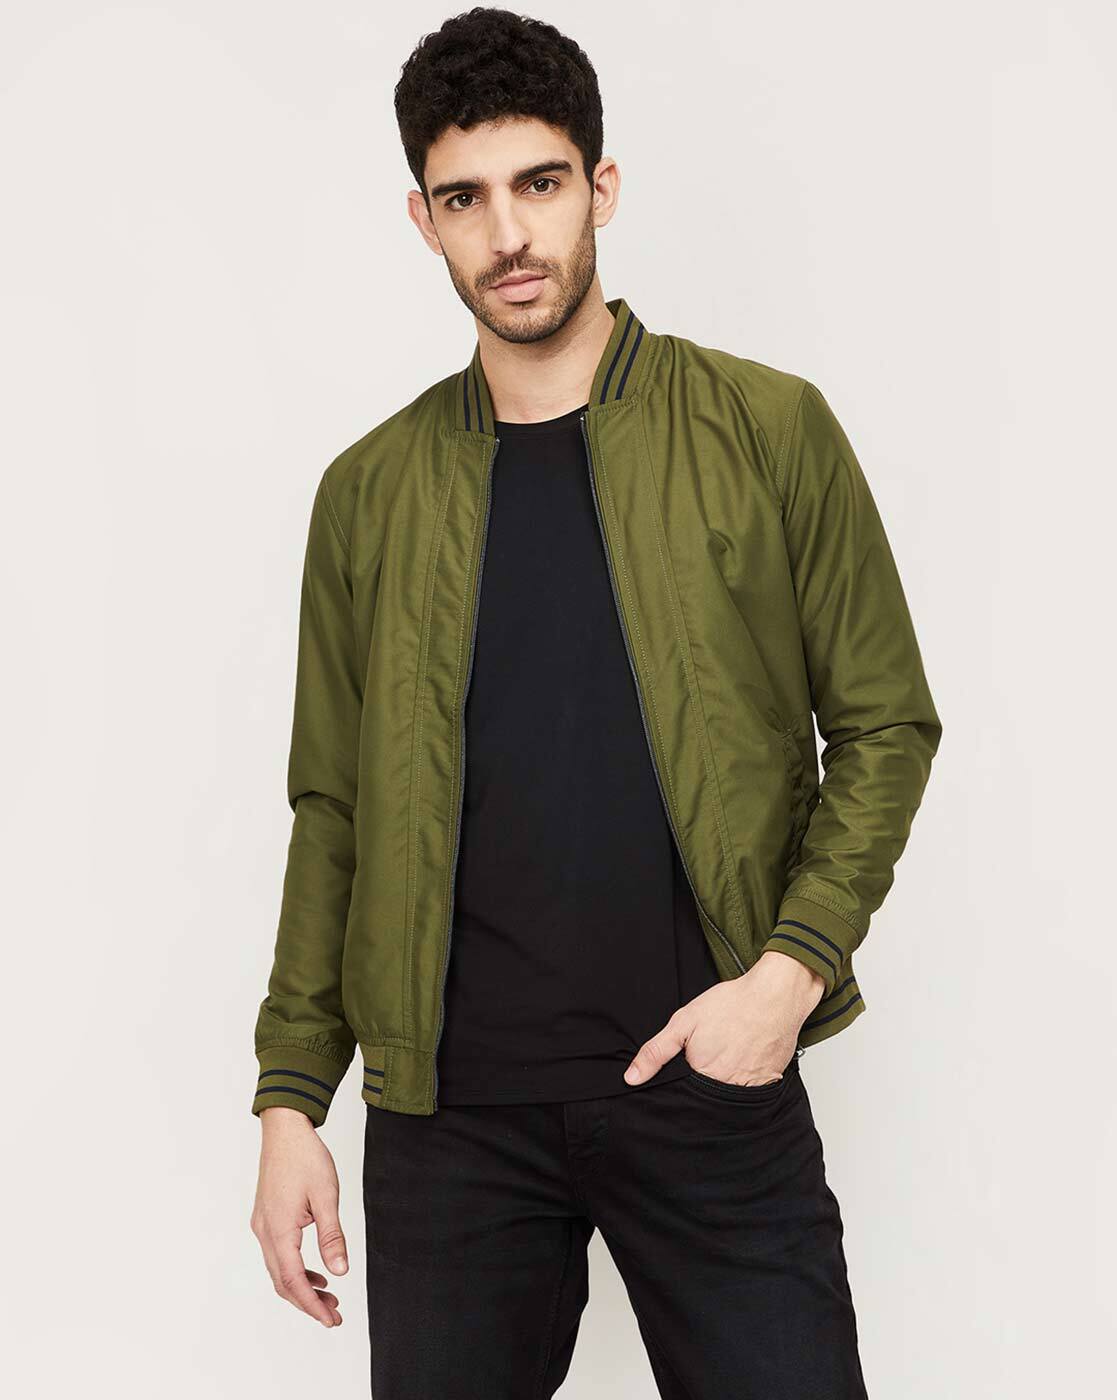 Buy Roadster Men Olive Green Solid Bomber Jacket - Jackets for Men